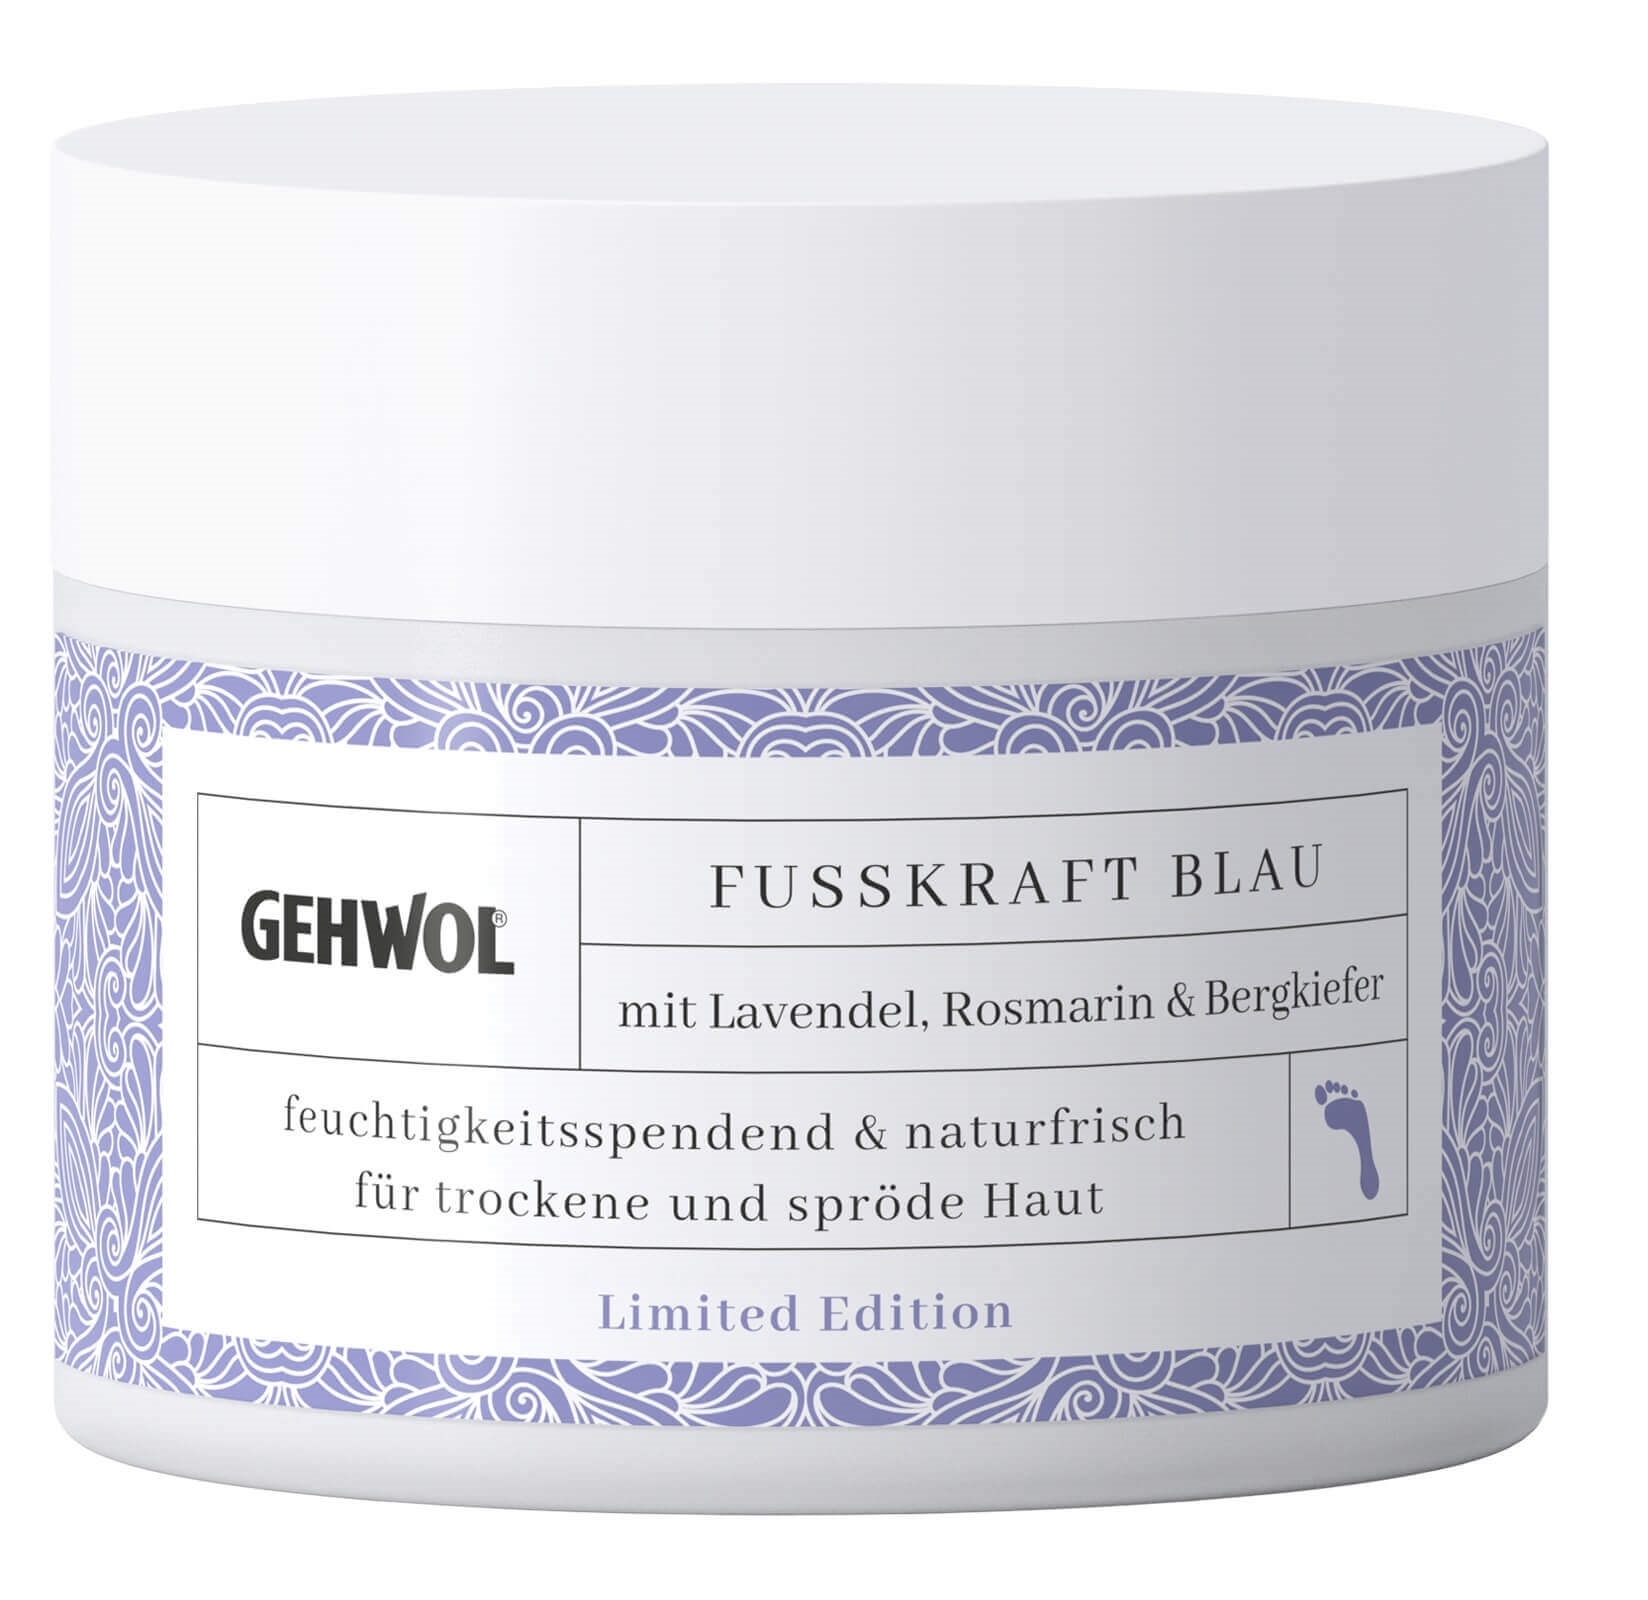 GEHWOL FUSSKRAFT Blau Limited Edition 50 ml